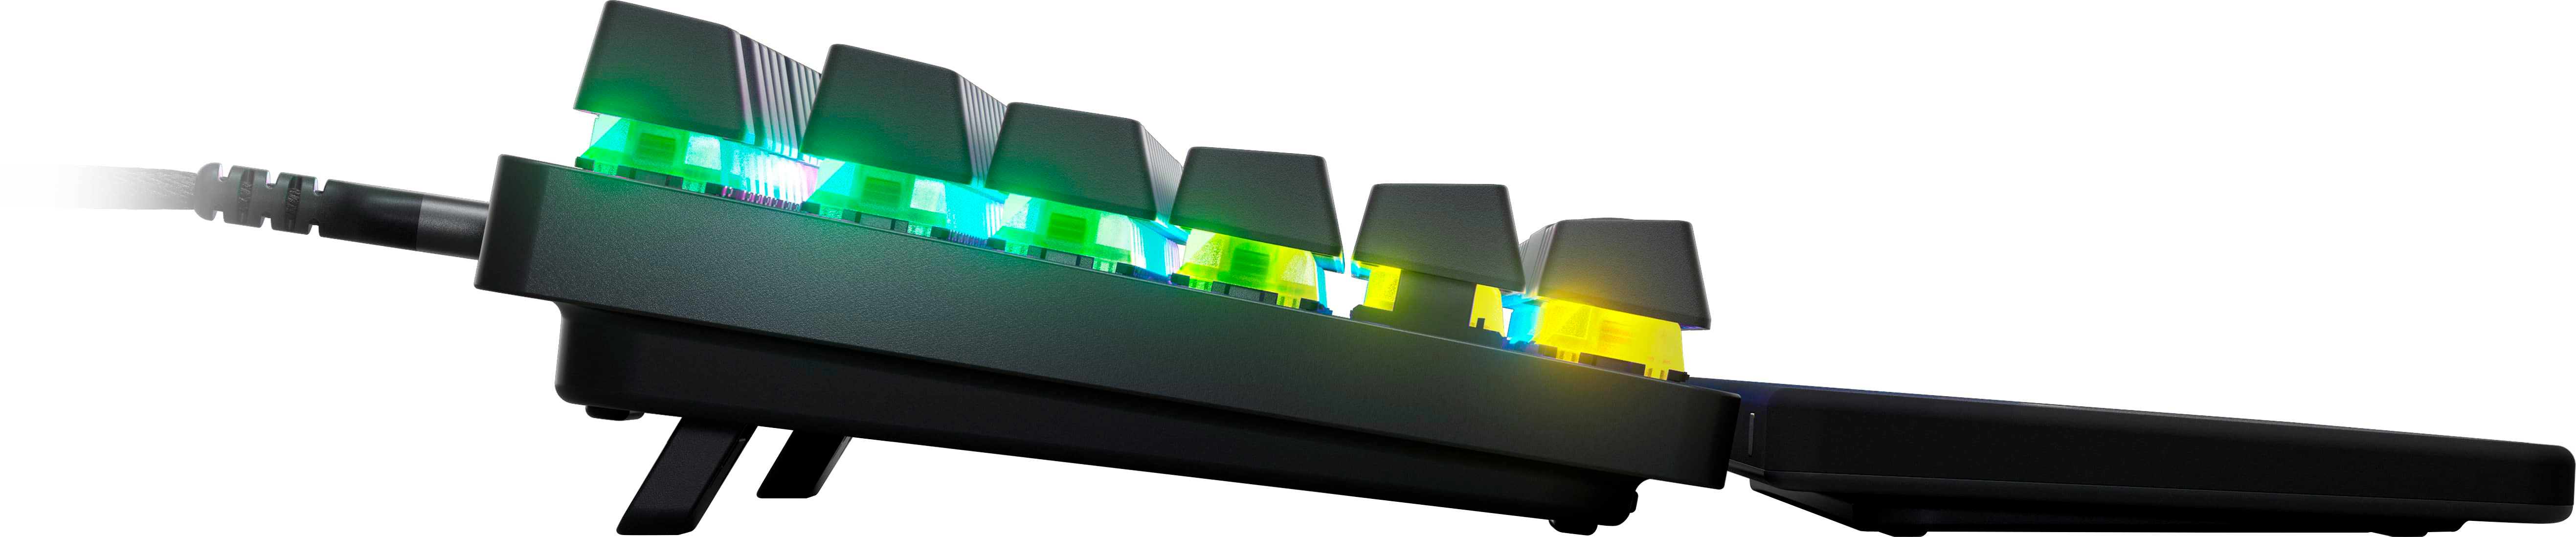 SteelSeries Apex Pro TKL Wired RGB Gaming Keyboard Black Certified  Refurbished 850014119348